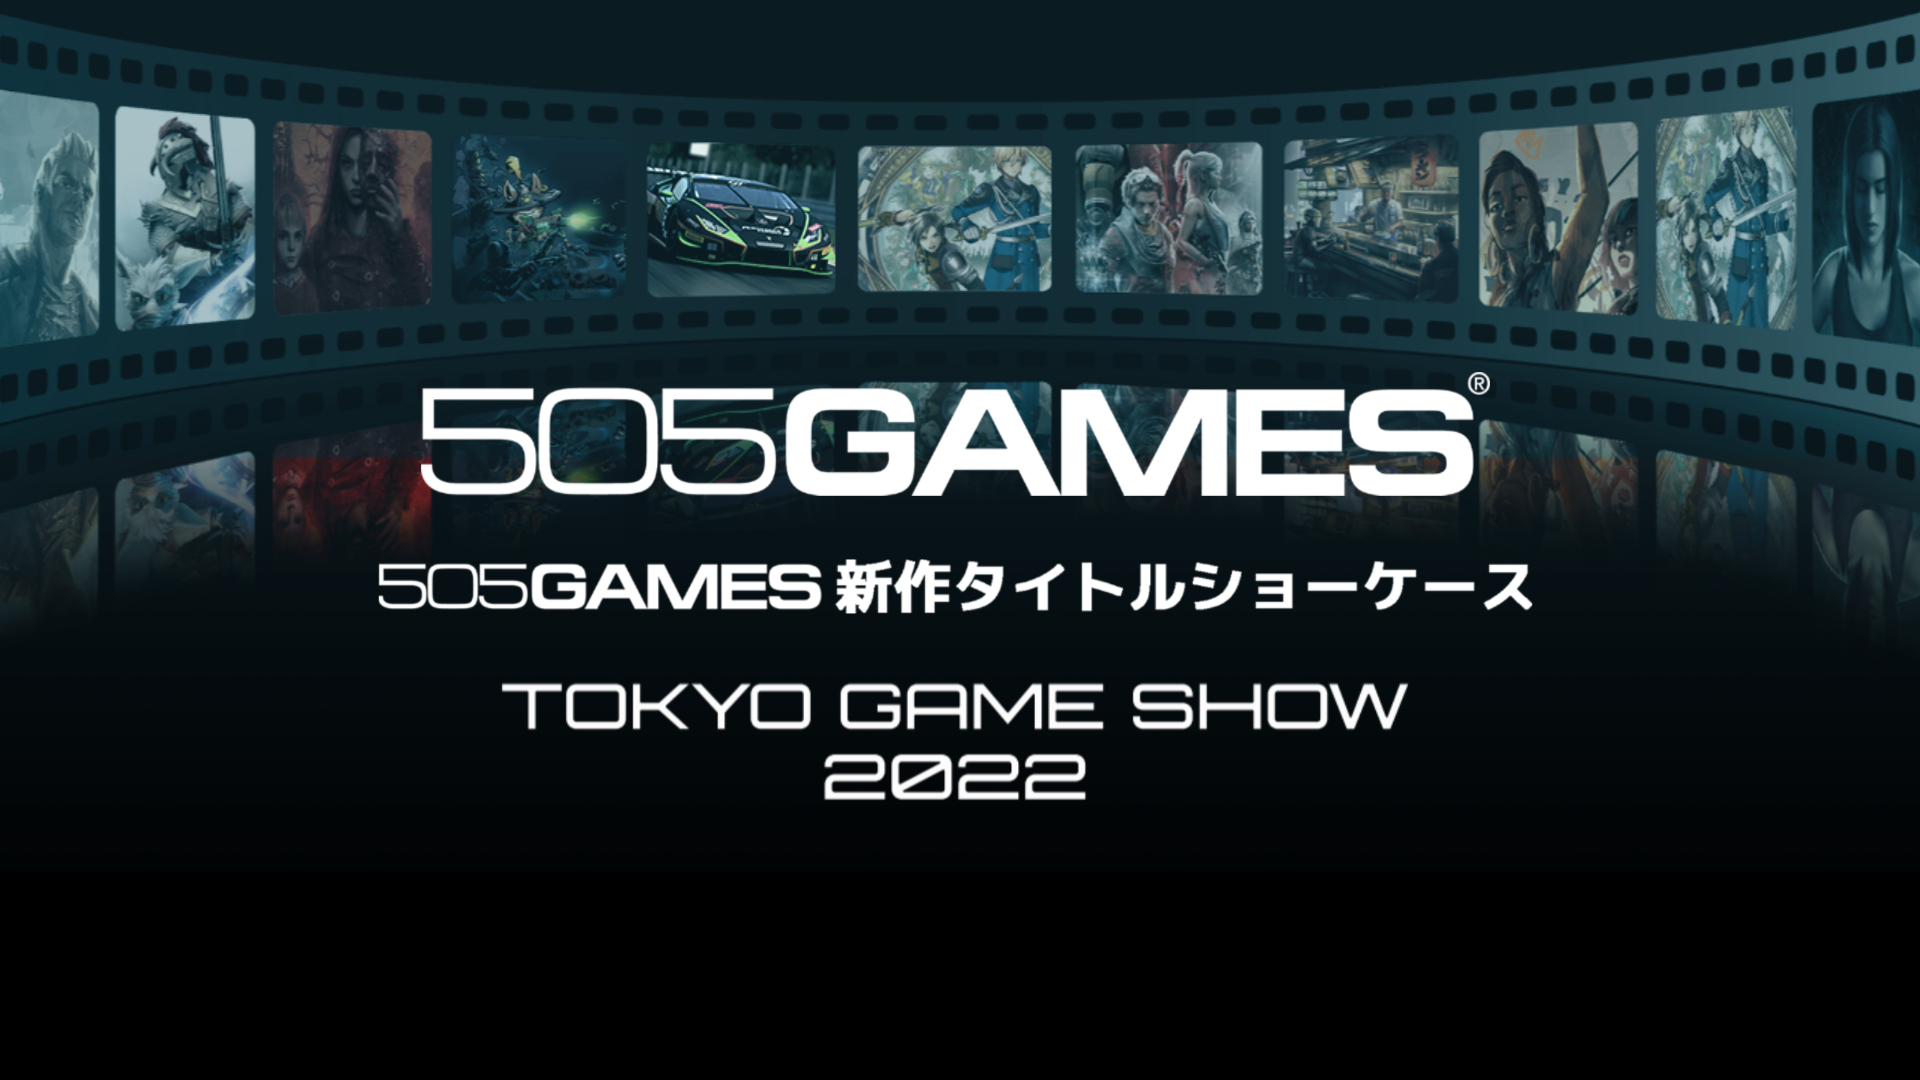 Tokyo Game Show 2022 resumen de la exhibición digital de 505 juegos